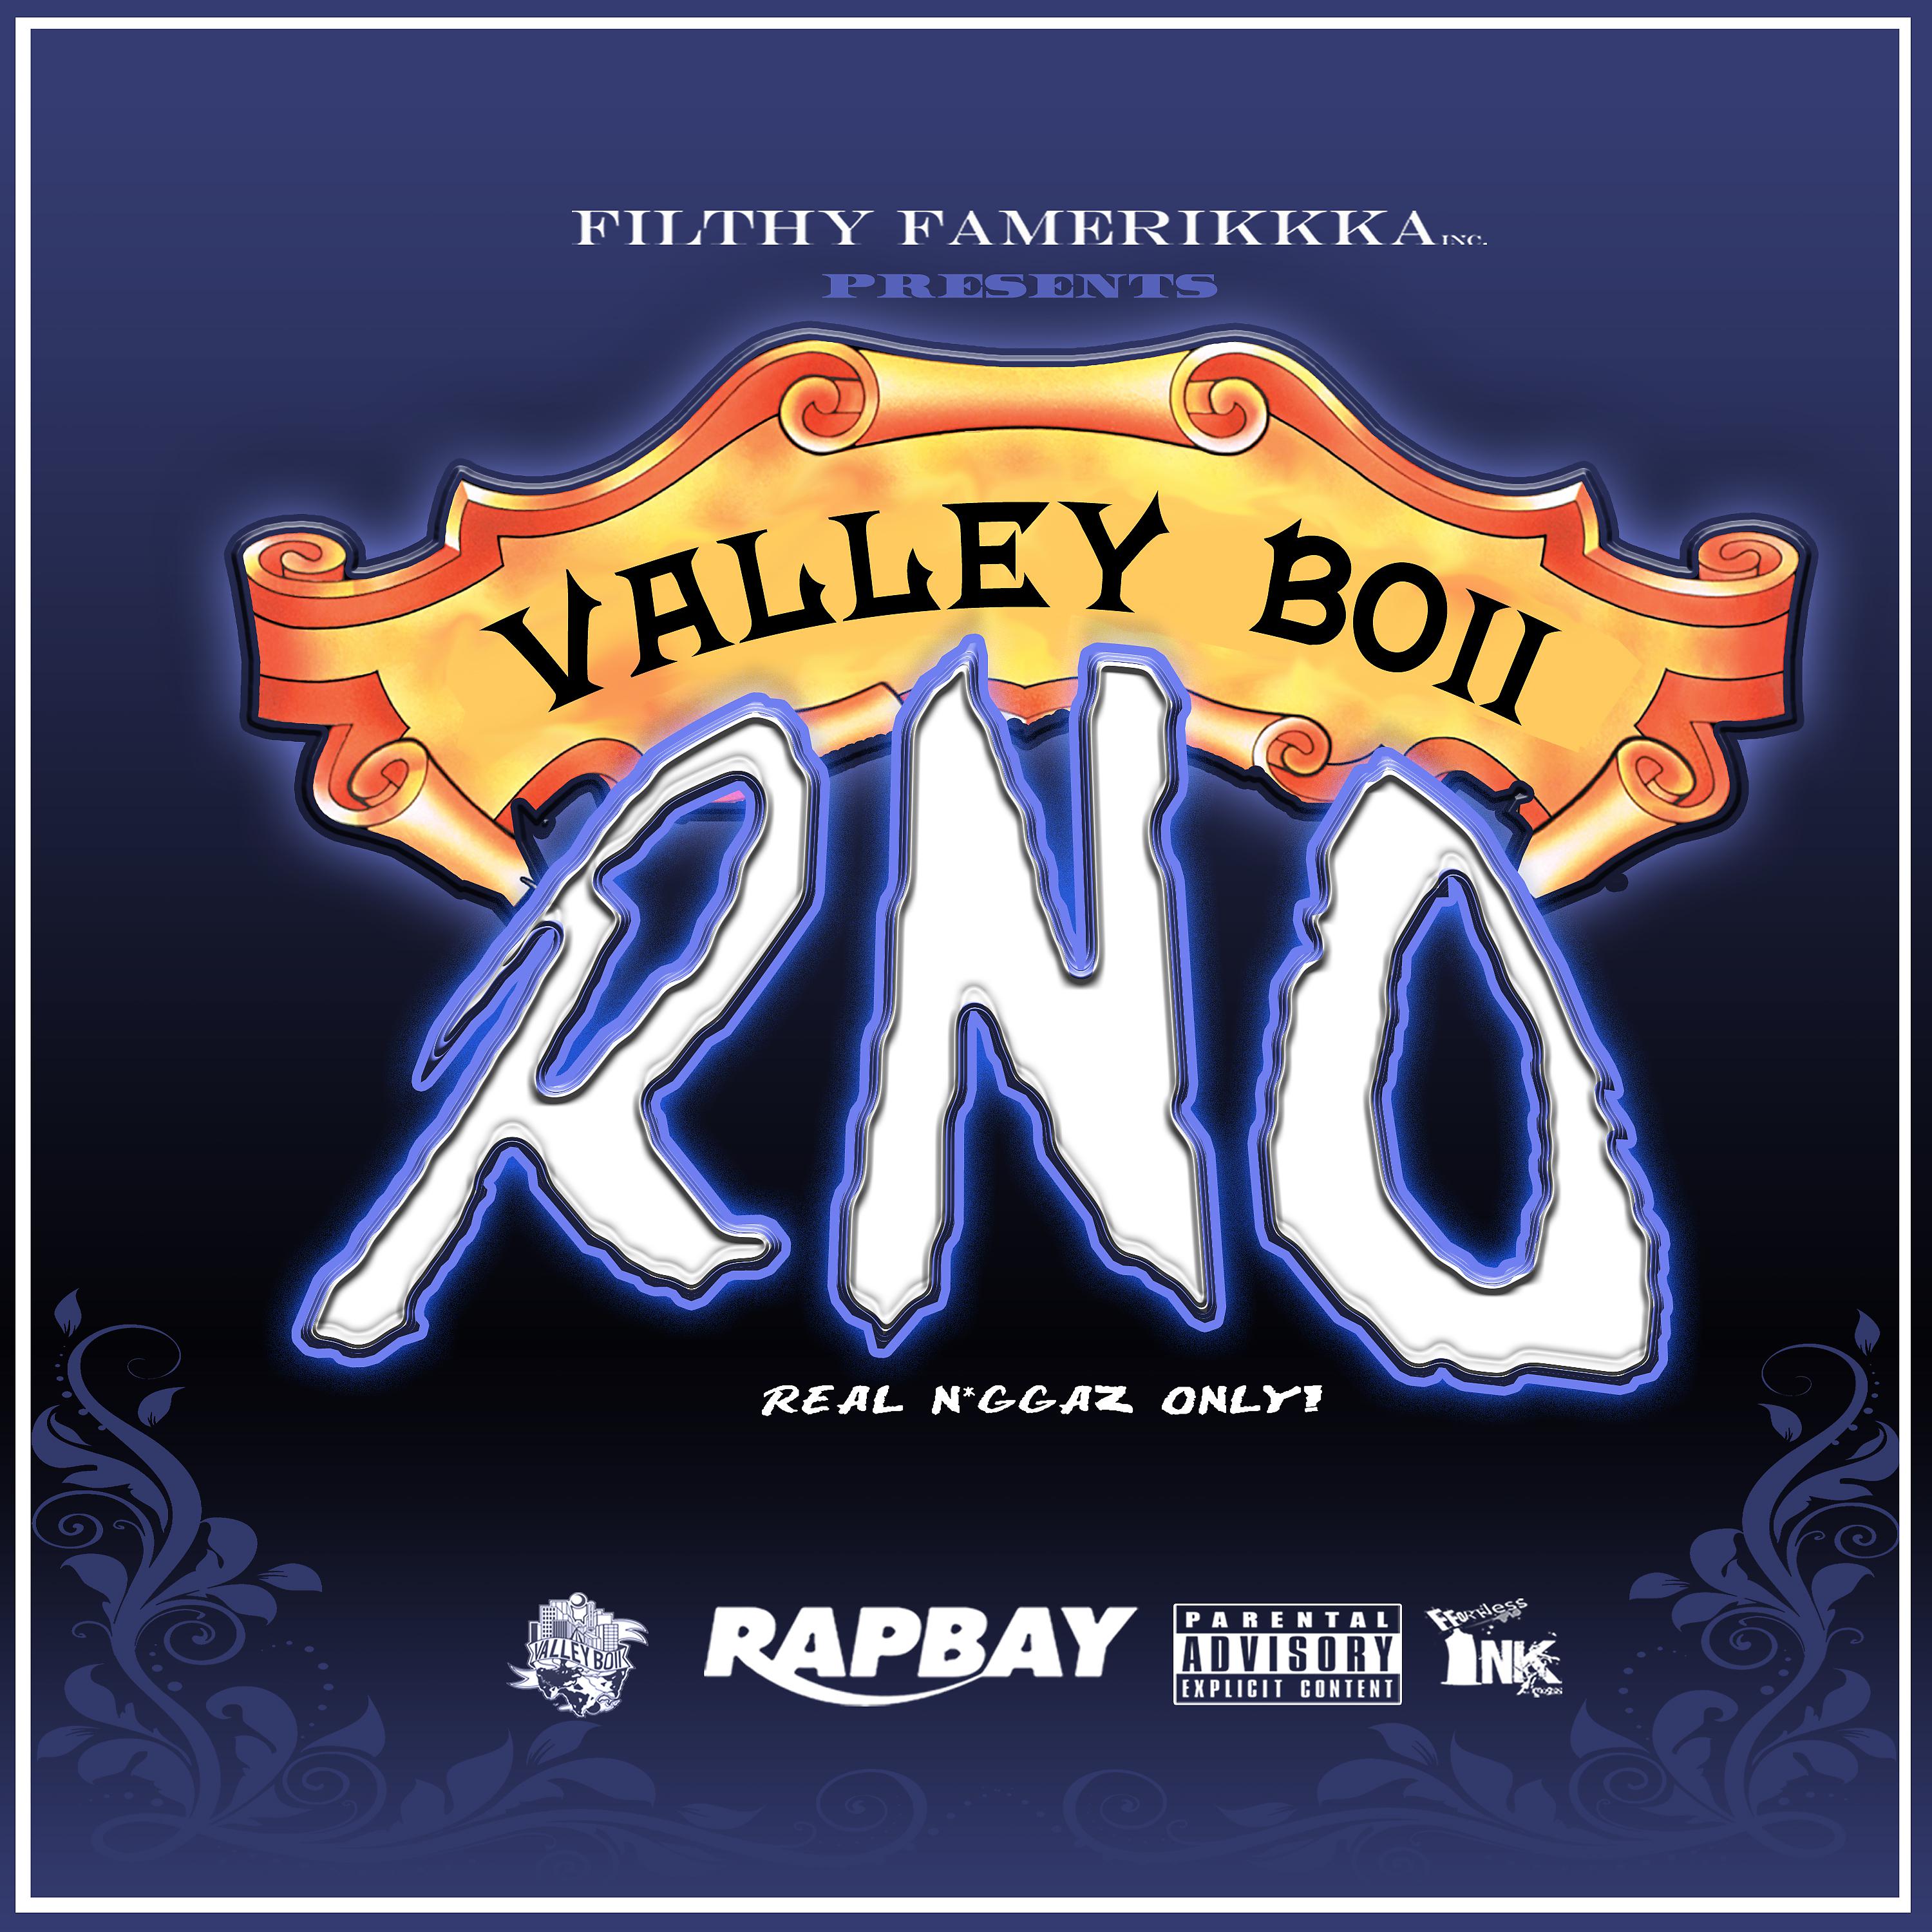 Постер альбома "V.B.R.n.O" (Valley Boii Real Niggaz Only)